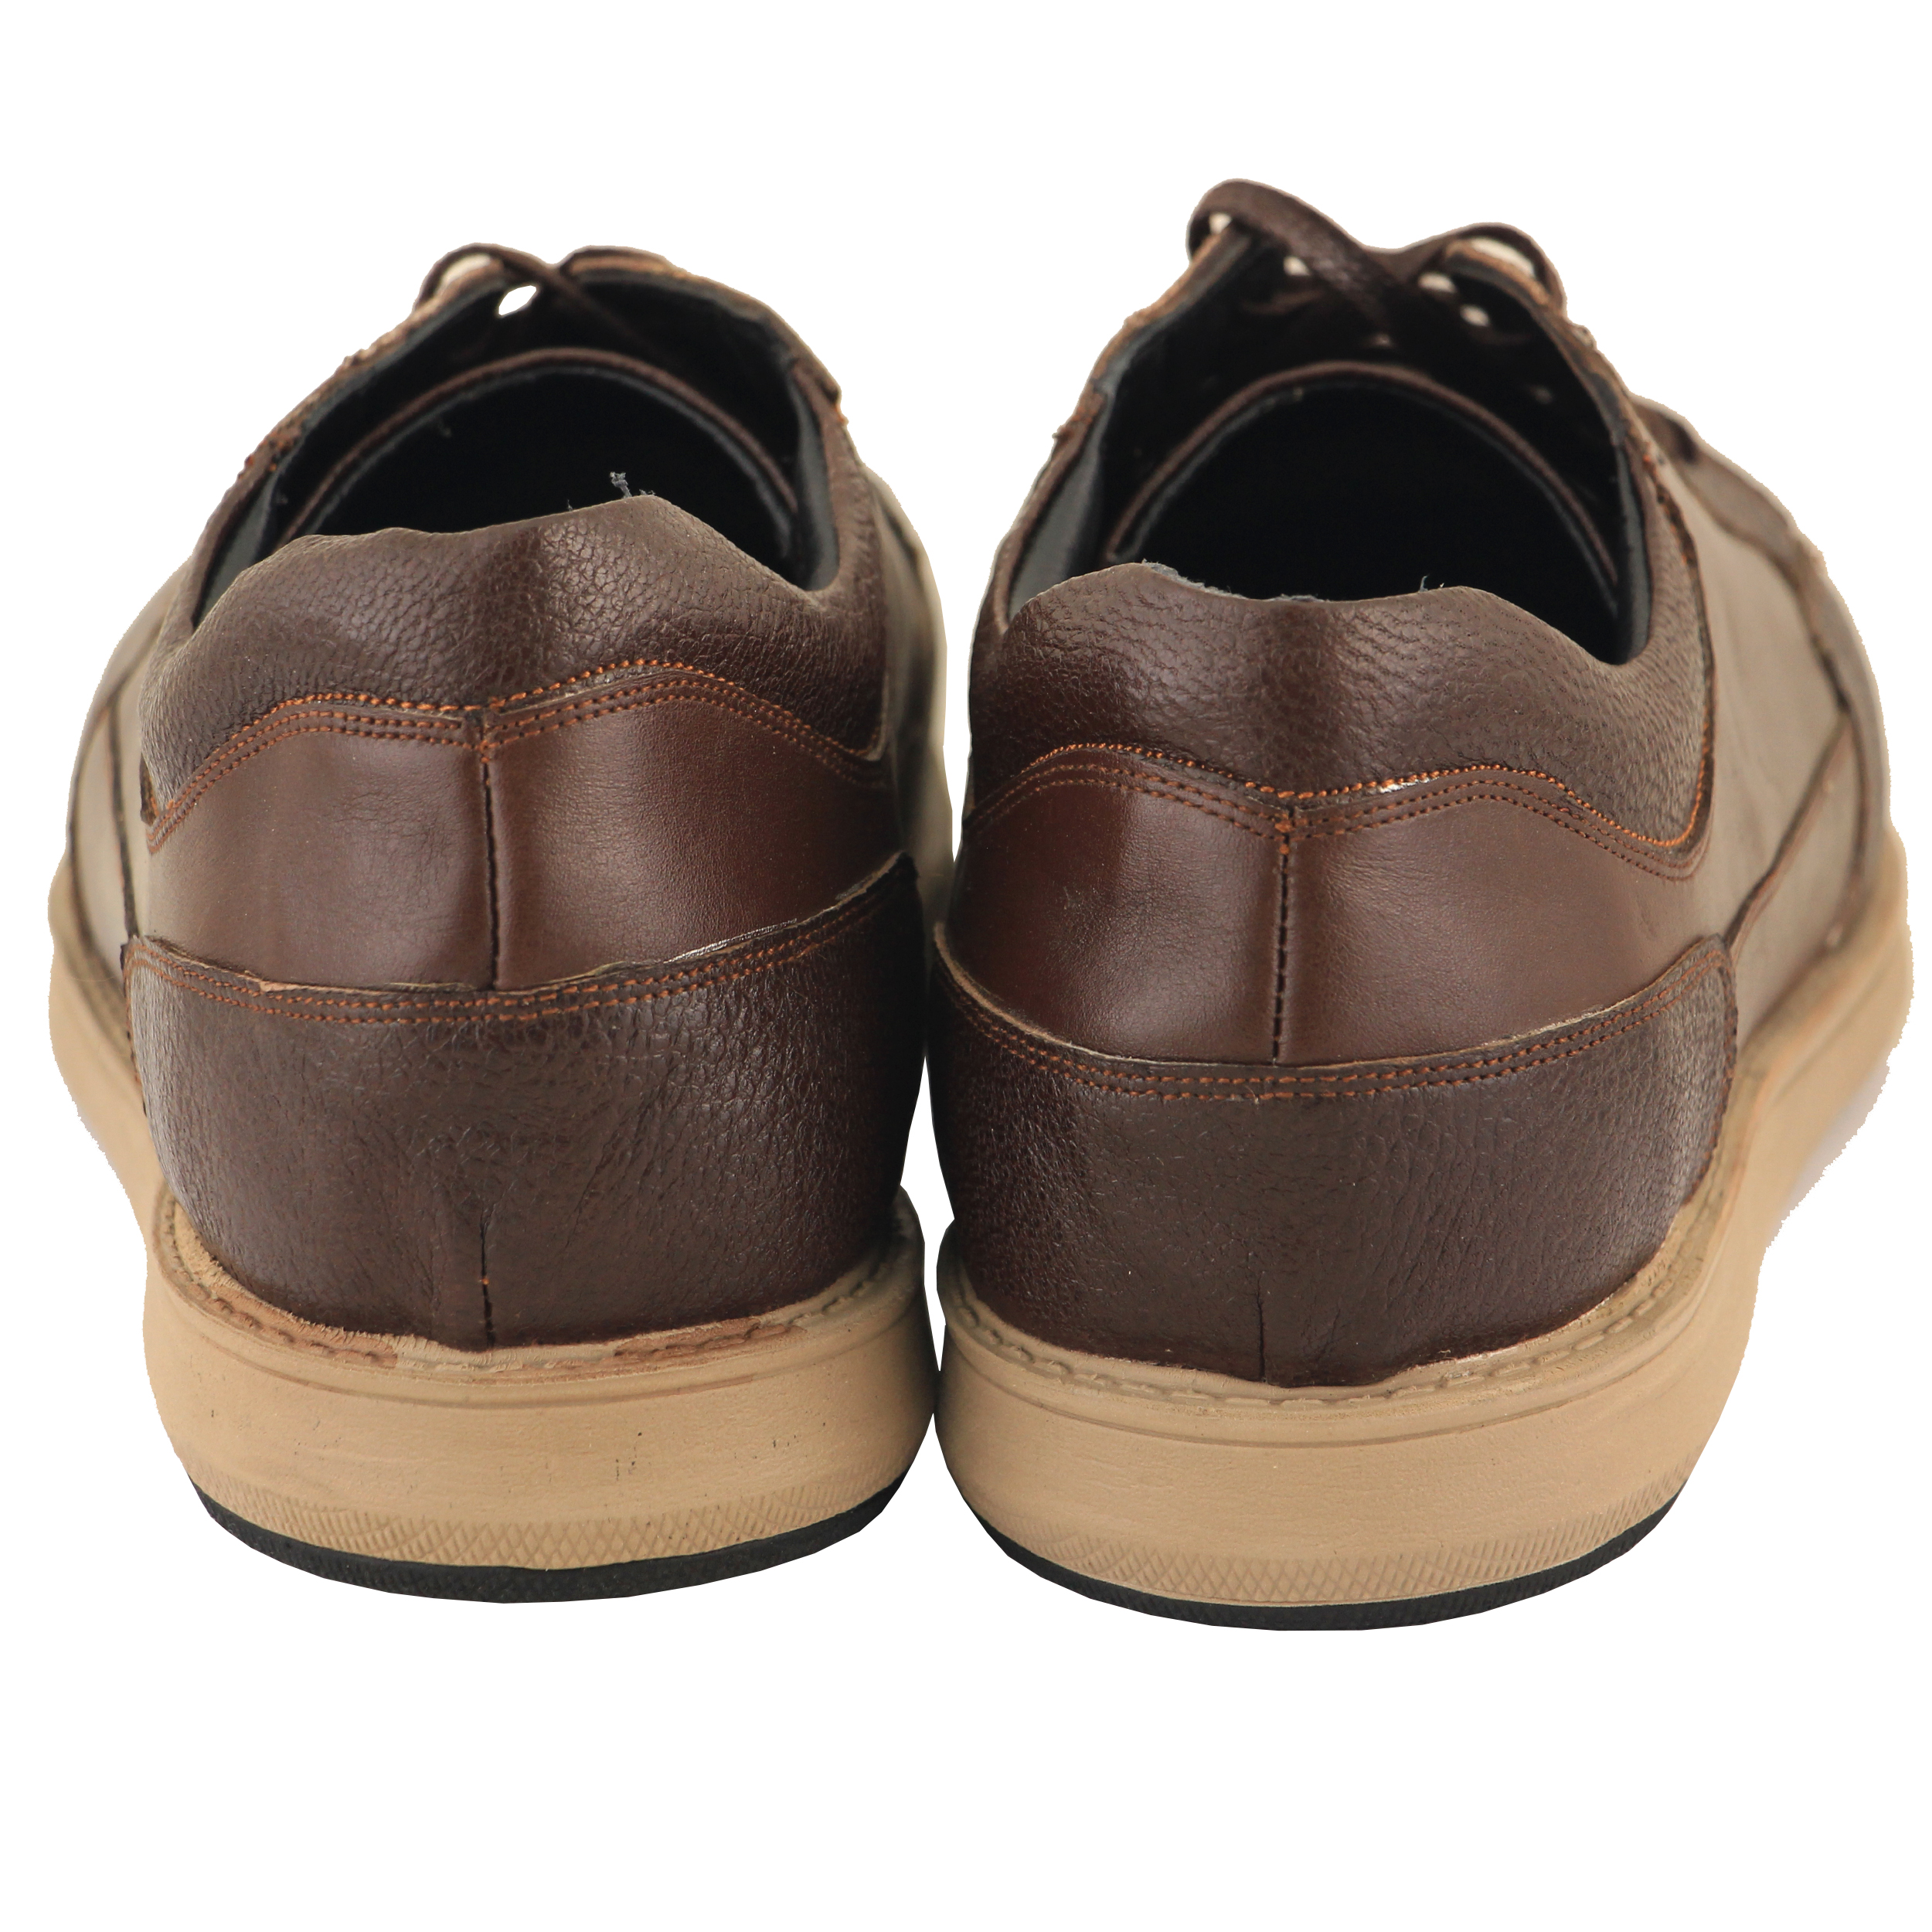 ADINCHARM leather men's casual shoes,DK103.qa Model